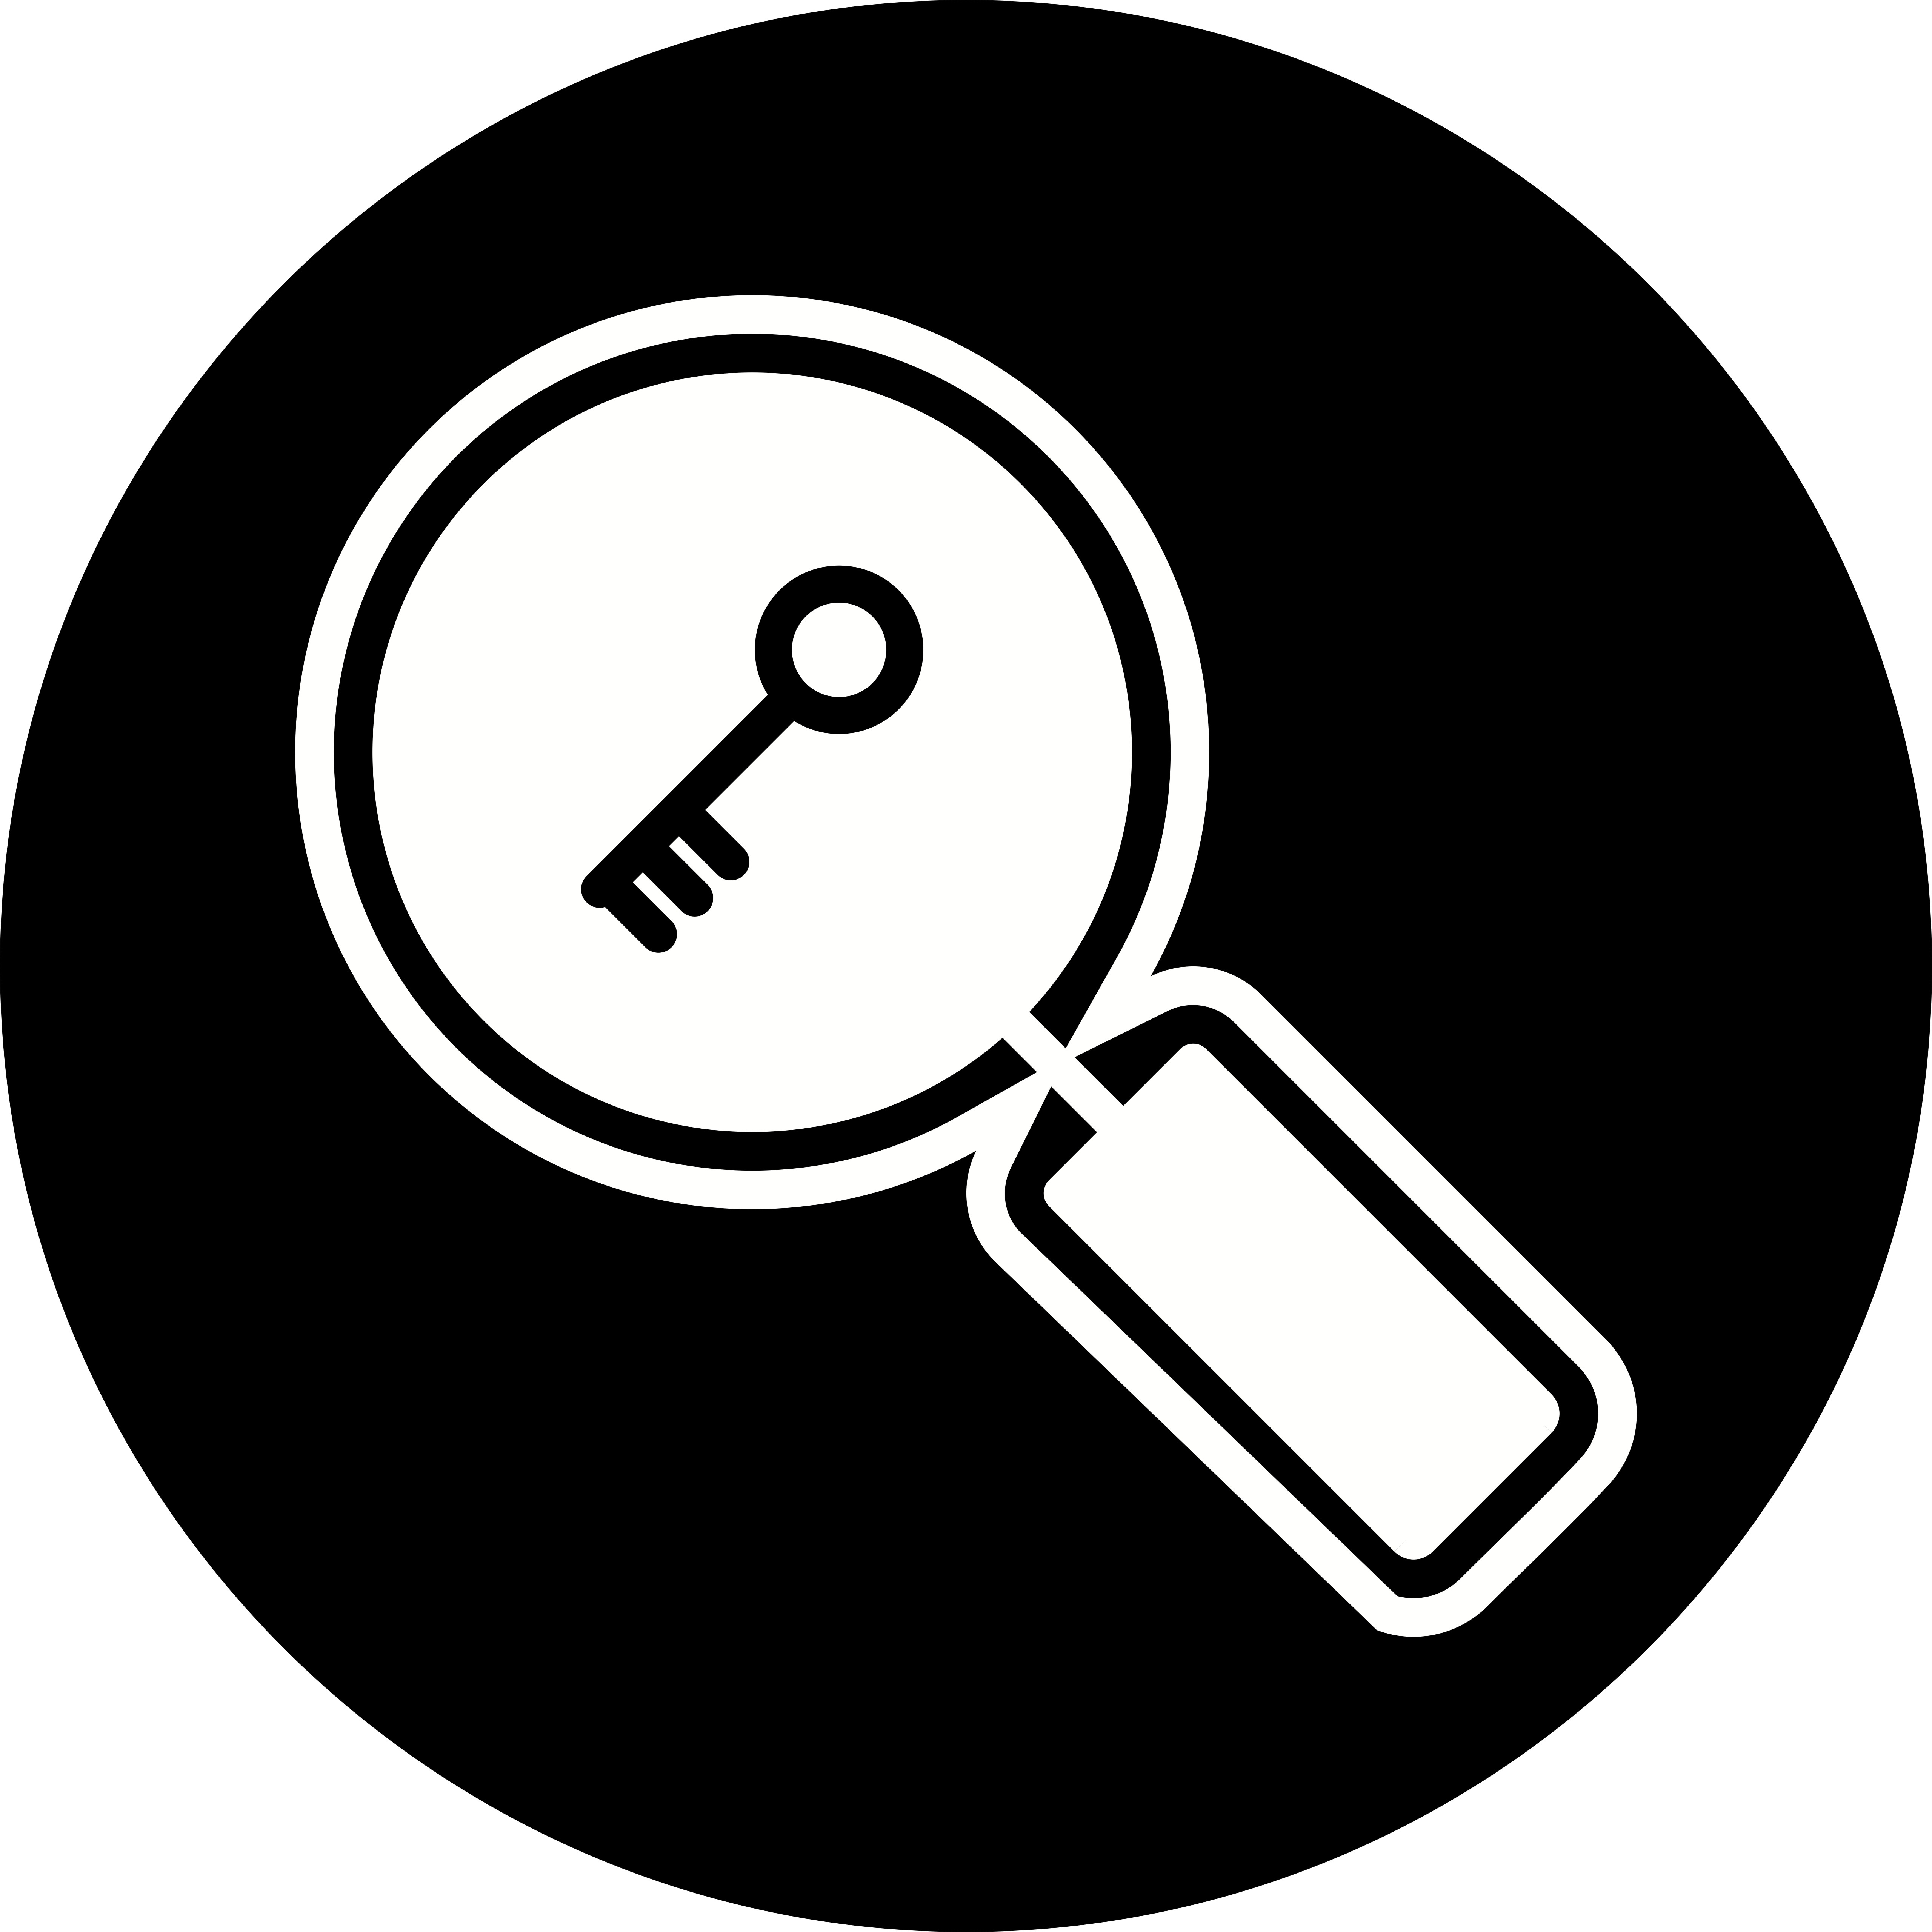 Keyword Search Icon Design - Download Free Vectors ...